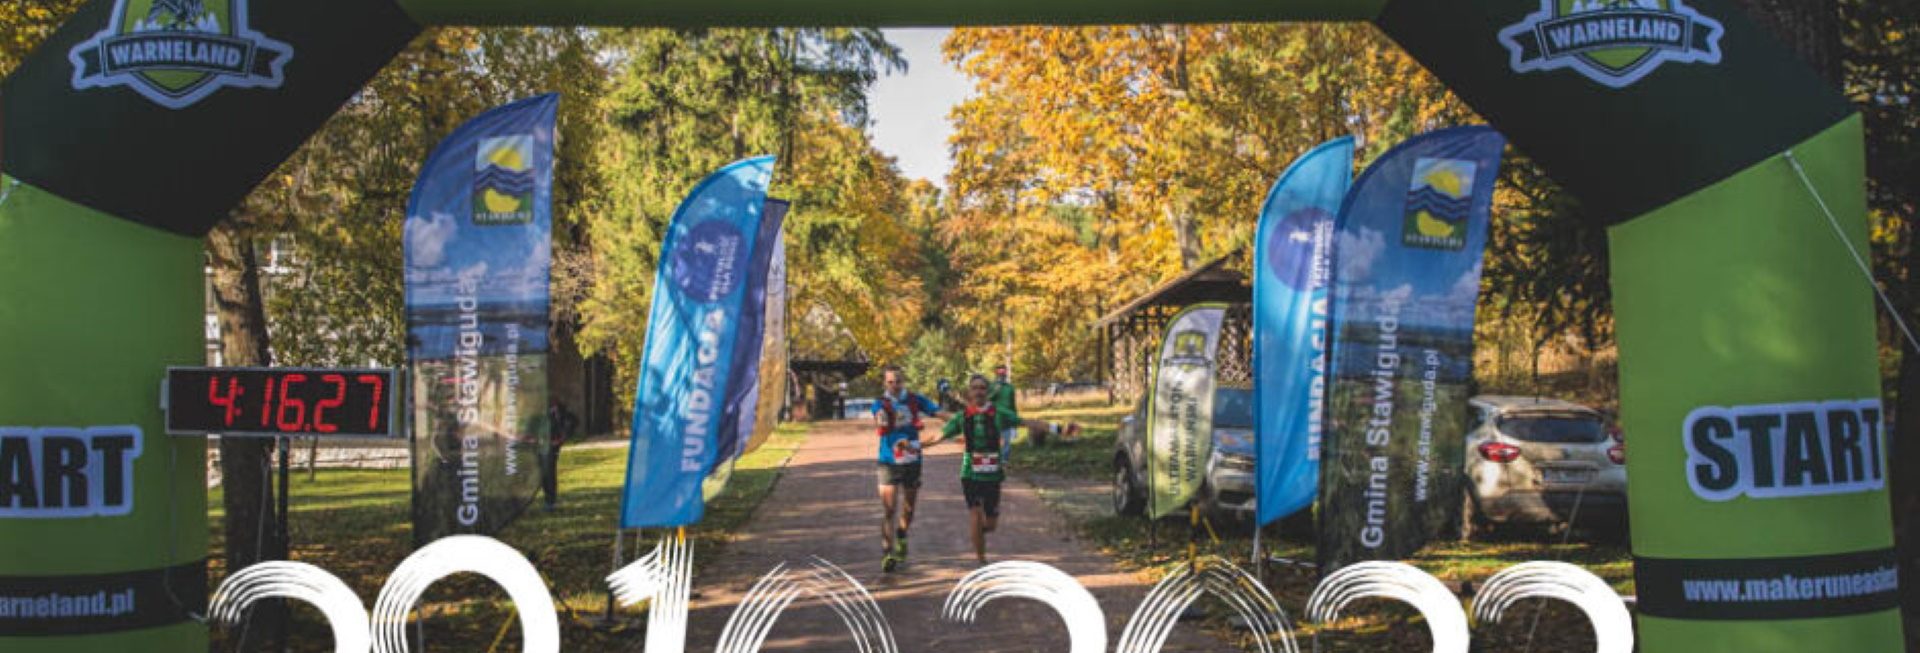 Plakat zapraszający na jesienny Bieg Ultramaraton Warmiński Warneland Stawiguda 2022. 